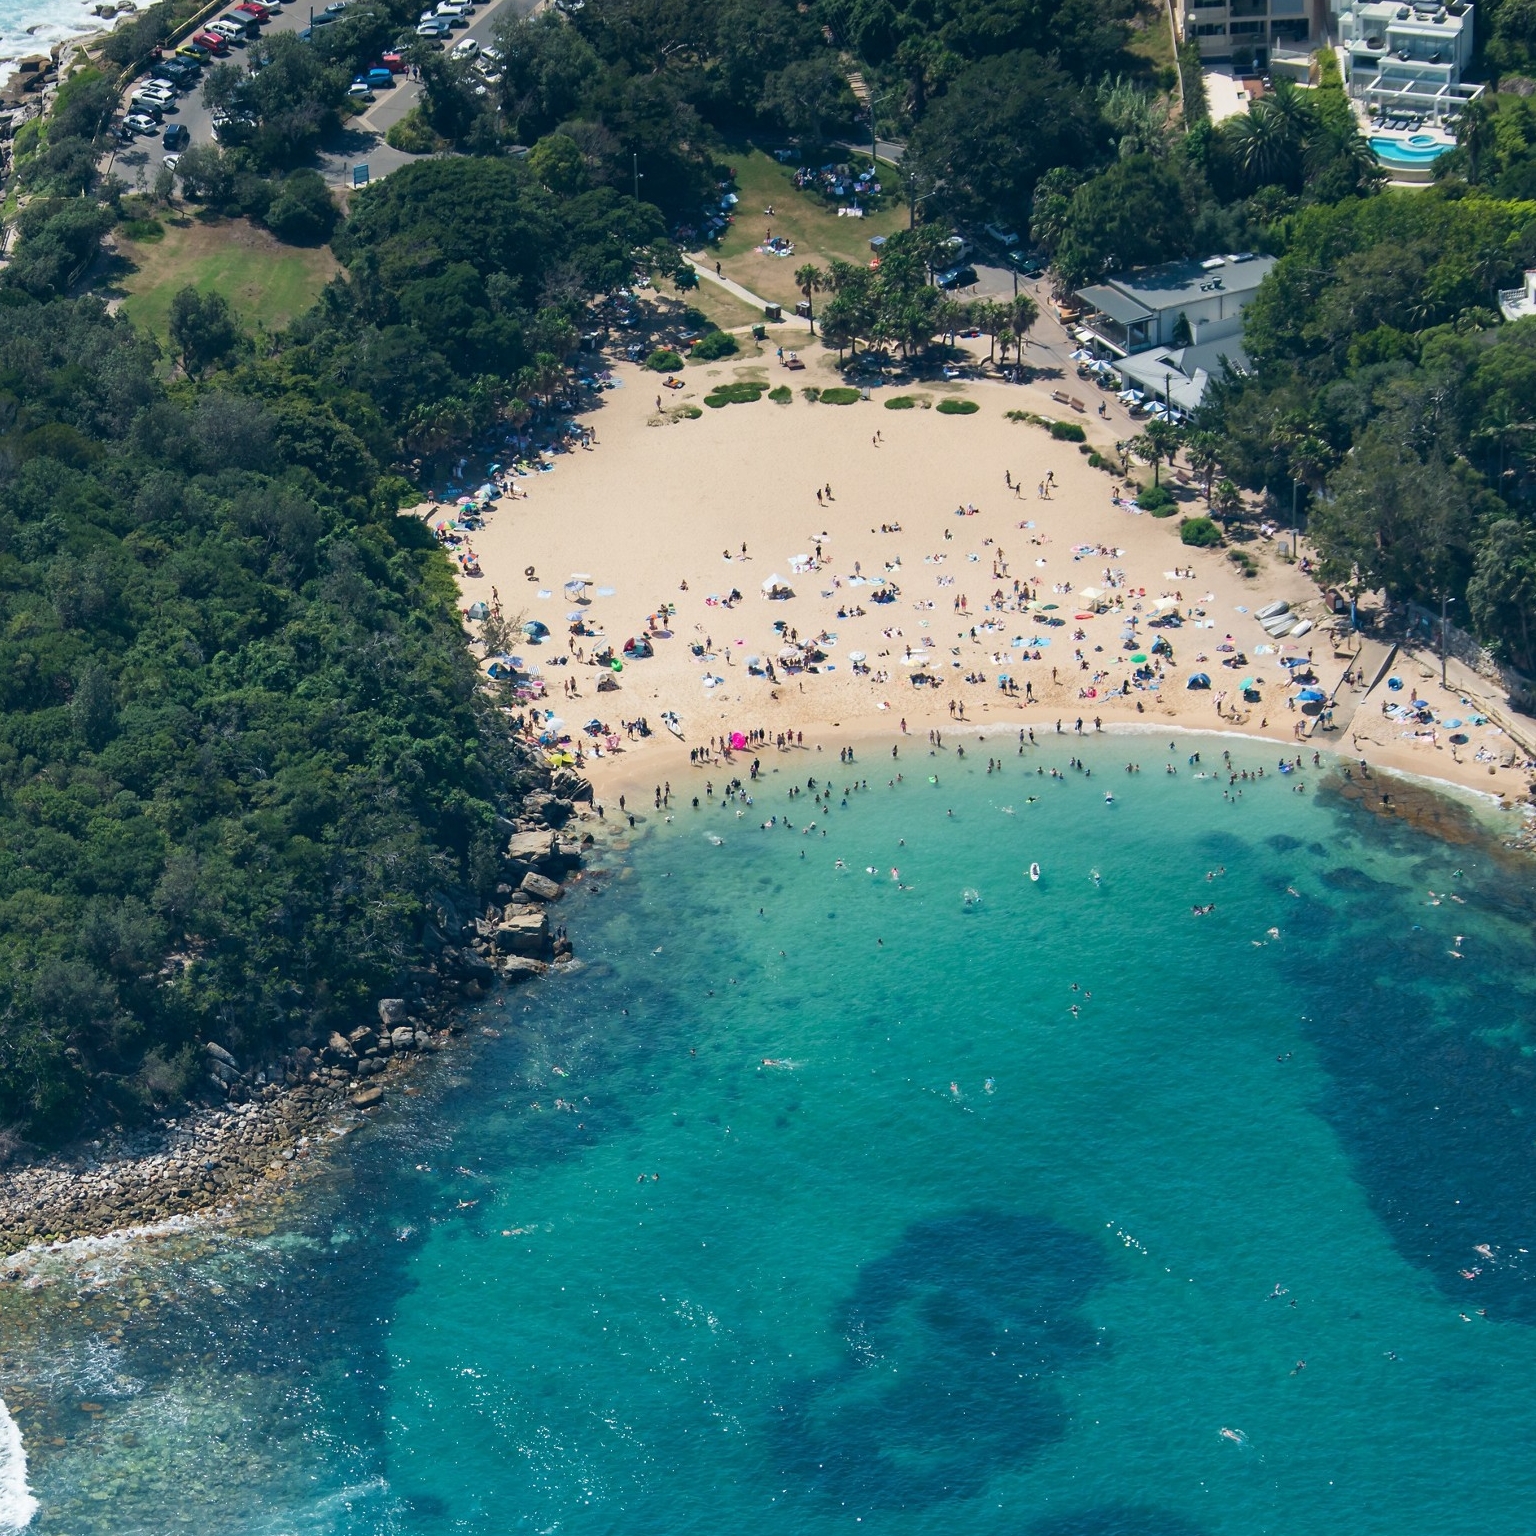 悉尼雪莉海滩鸟瞰图 © 新南威尔士州旅游局版权所有